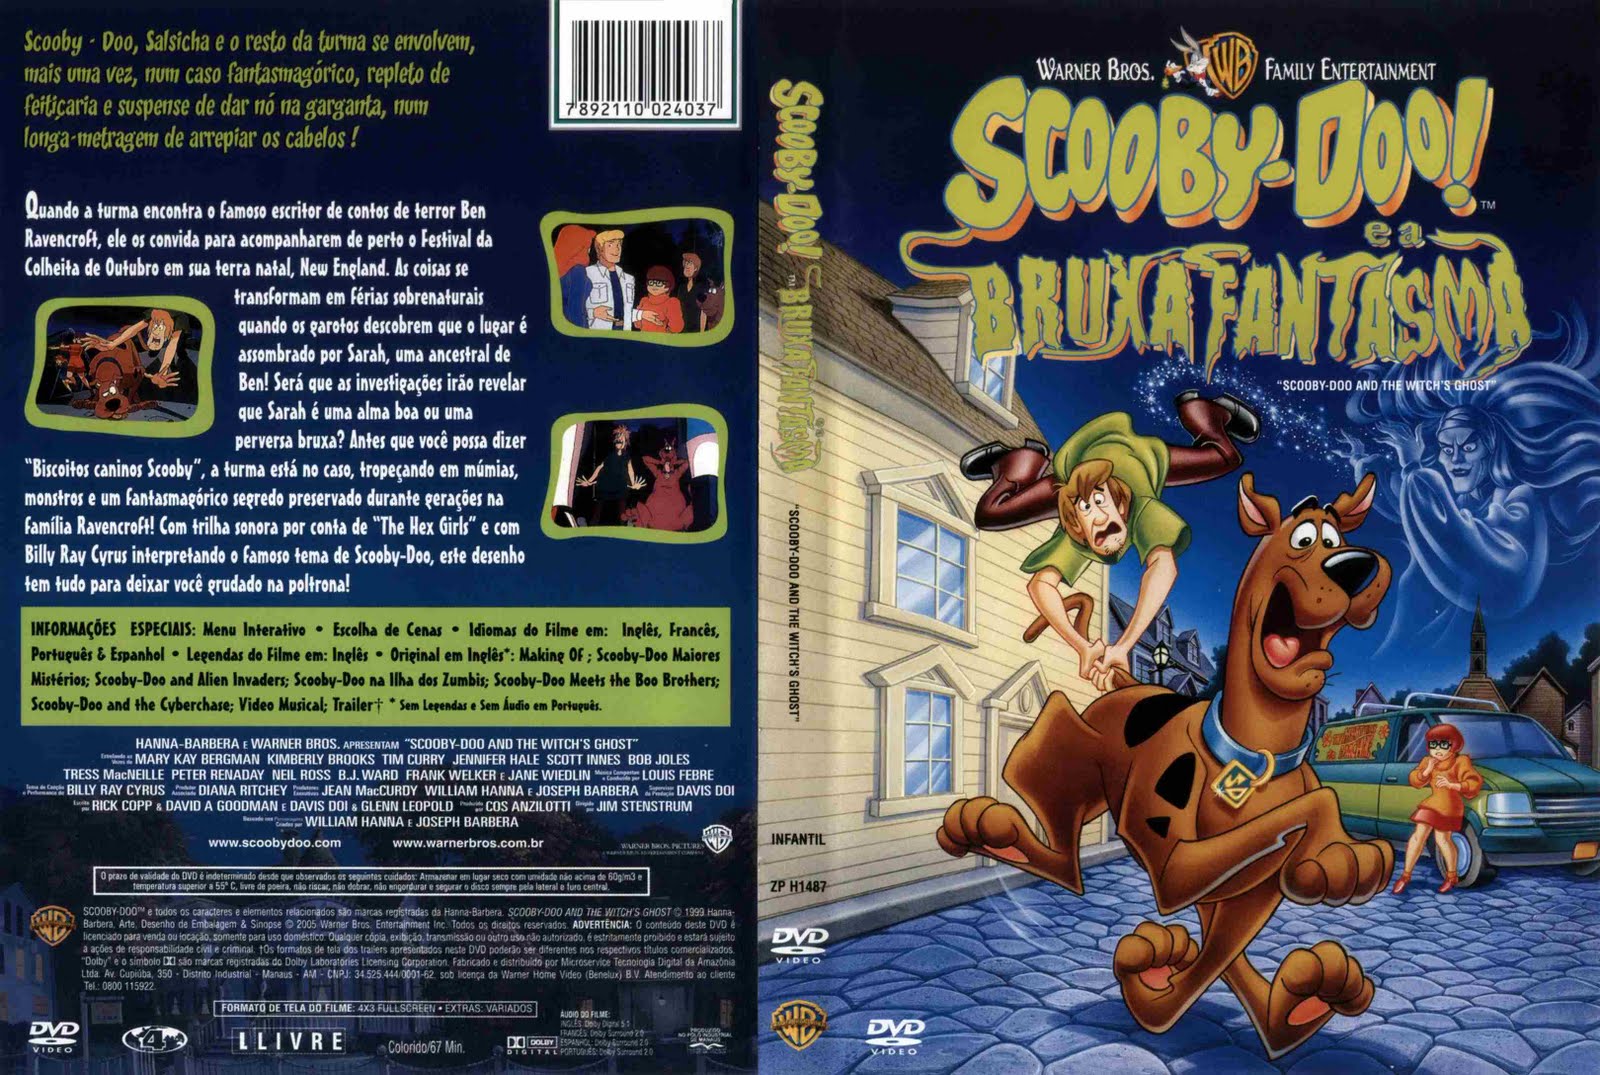 Scooby doo comics. Ханна Барбера Скуби Ду. Двд диски Скуби Ду. Скуби-Ду (DVD). Диск Скуби Ду.